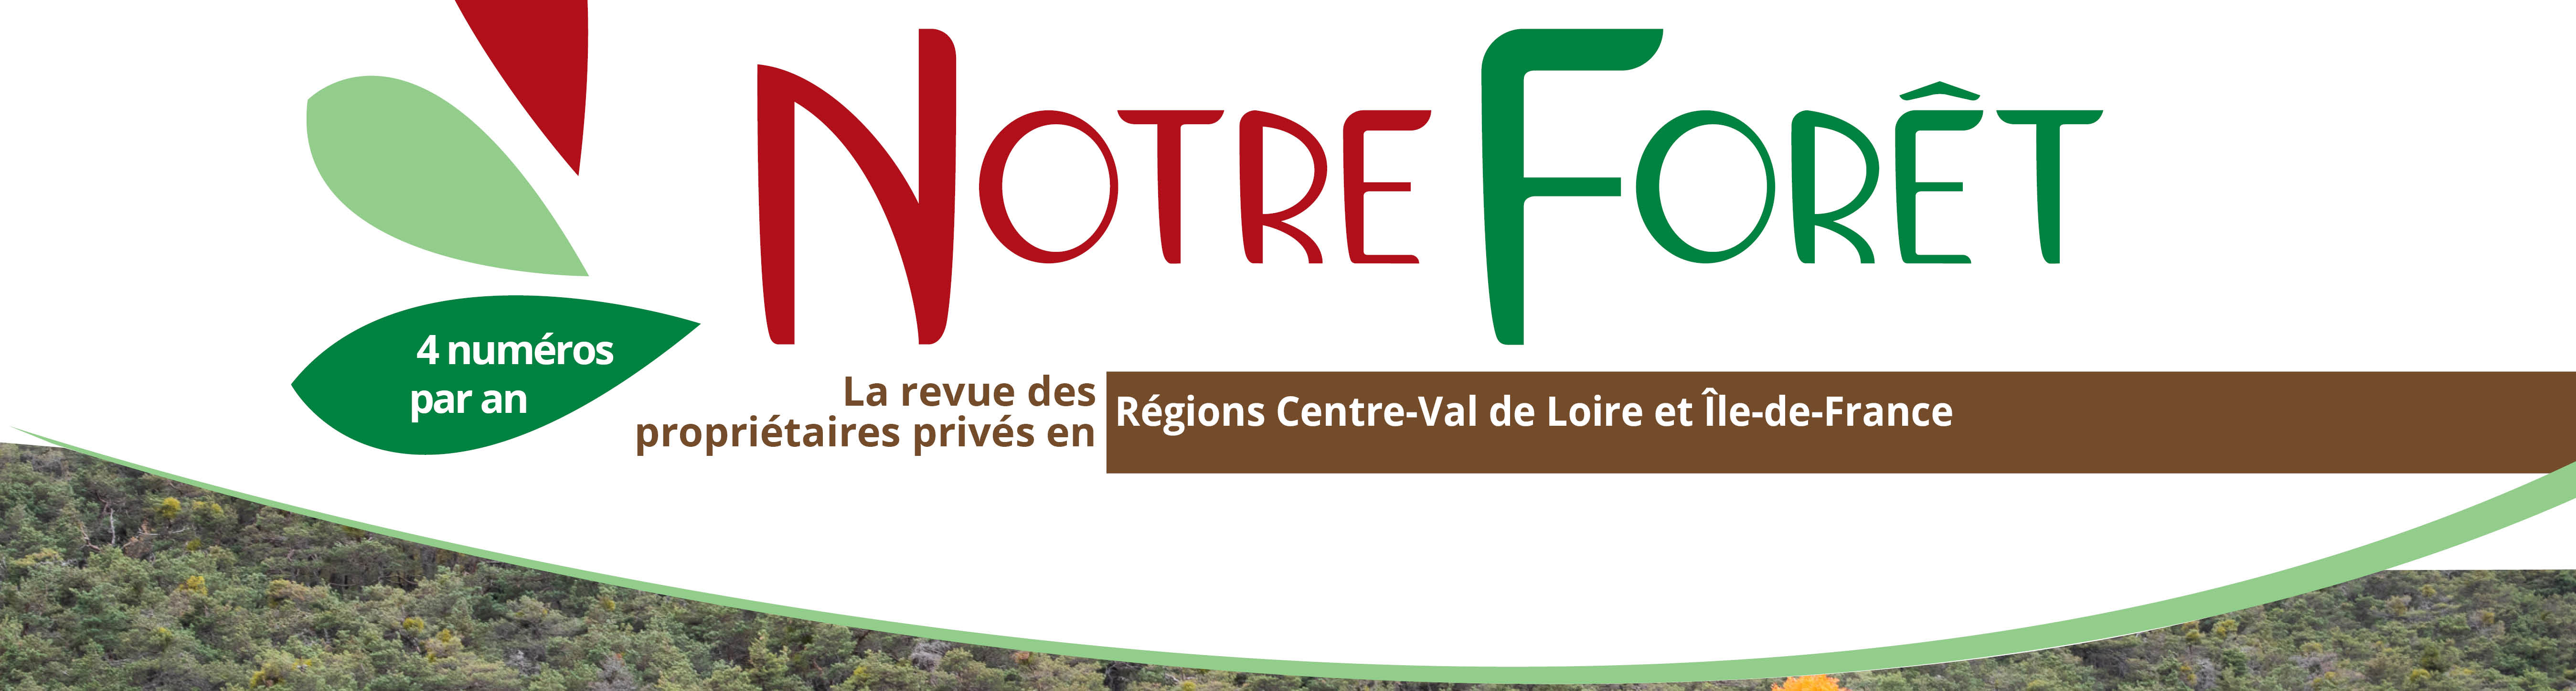 CNPF Île de France - Centre-Val de Loire, la gestion durable des forêt ...